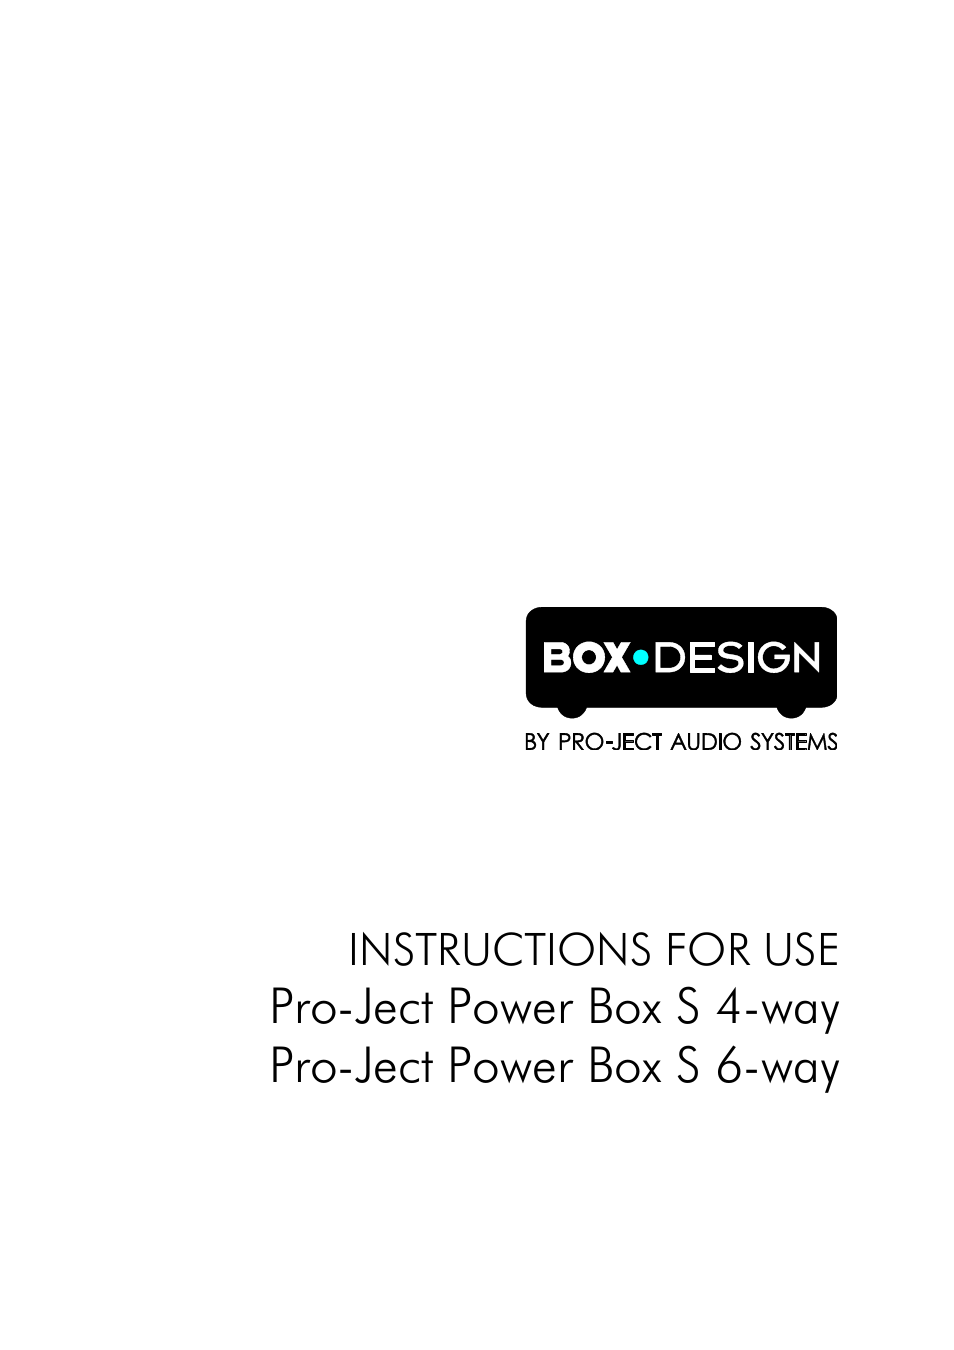 Power Box S 4-way